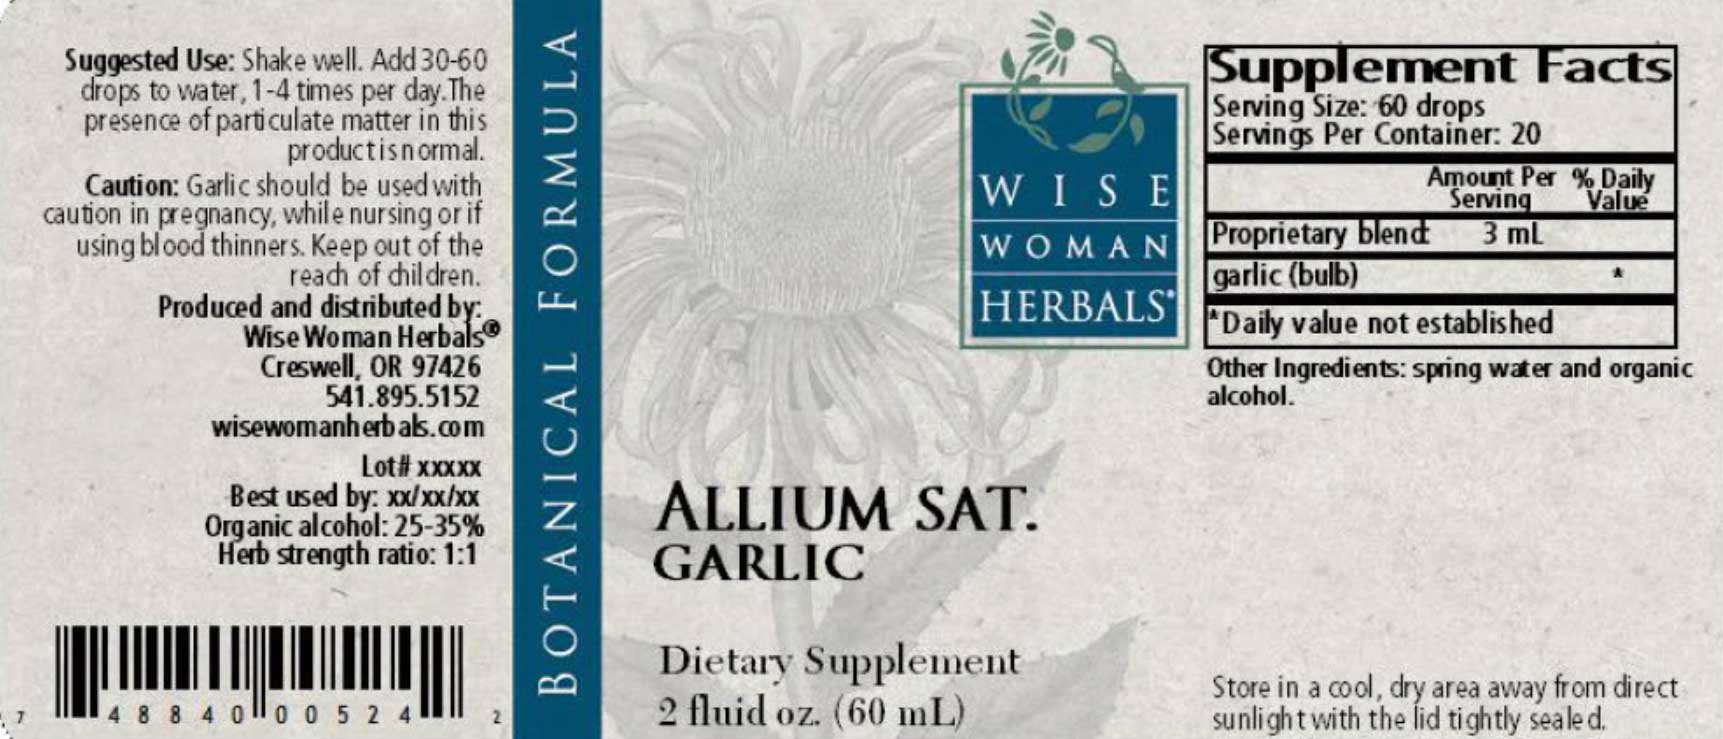 Wise Woman Herbals Allium Sativum Garlic Label